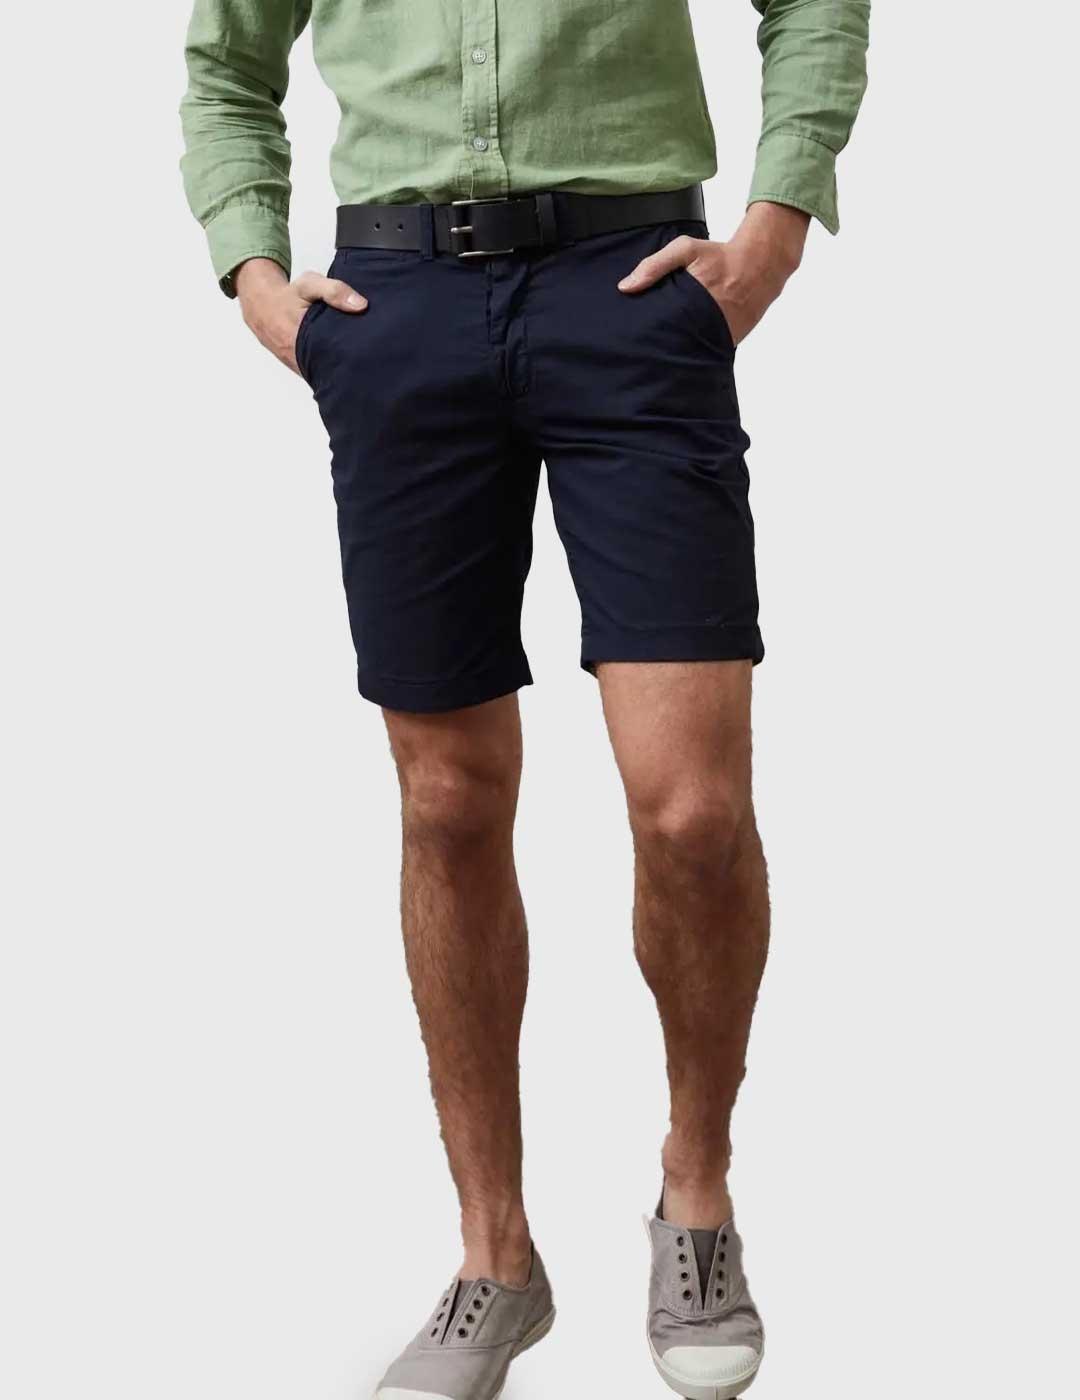 Altonadock Pantalón Short azul marino para hombre